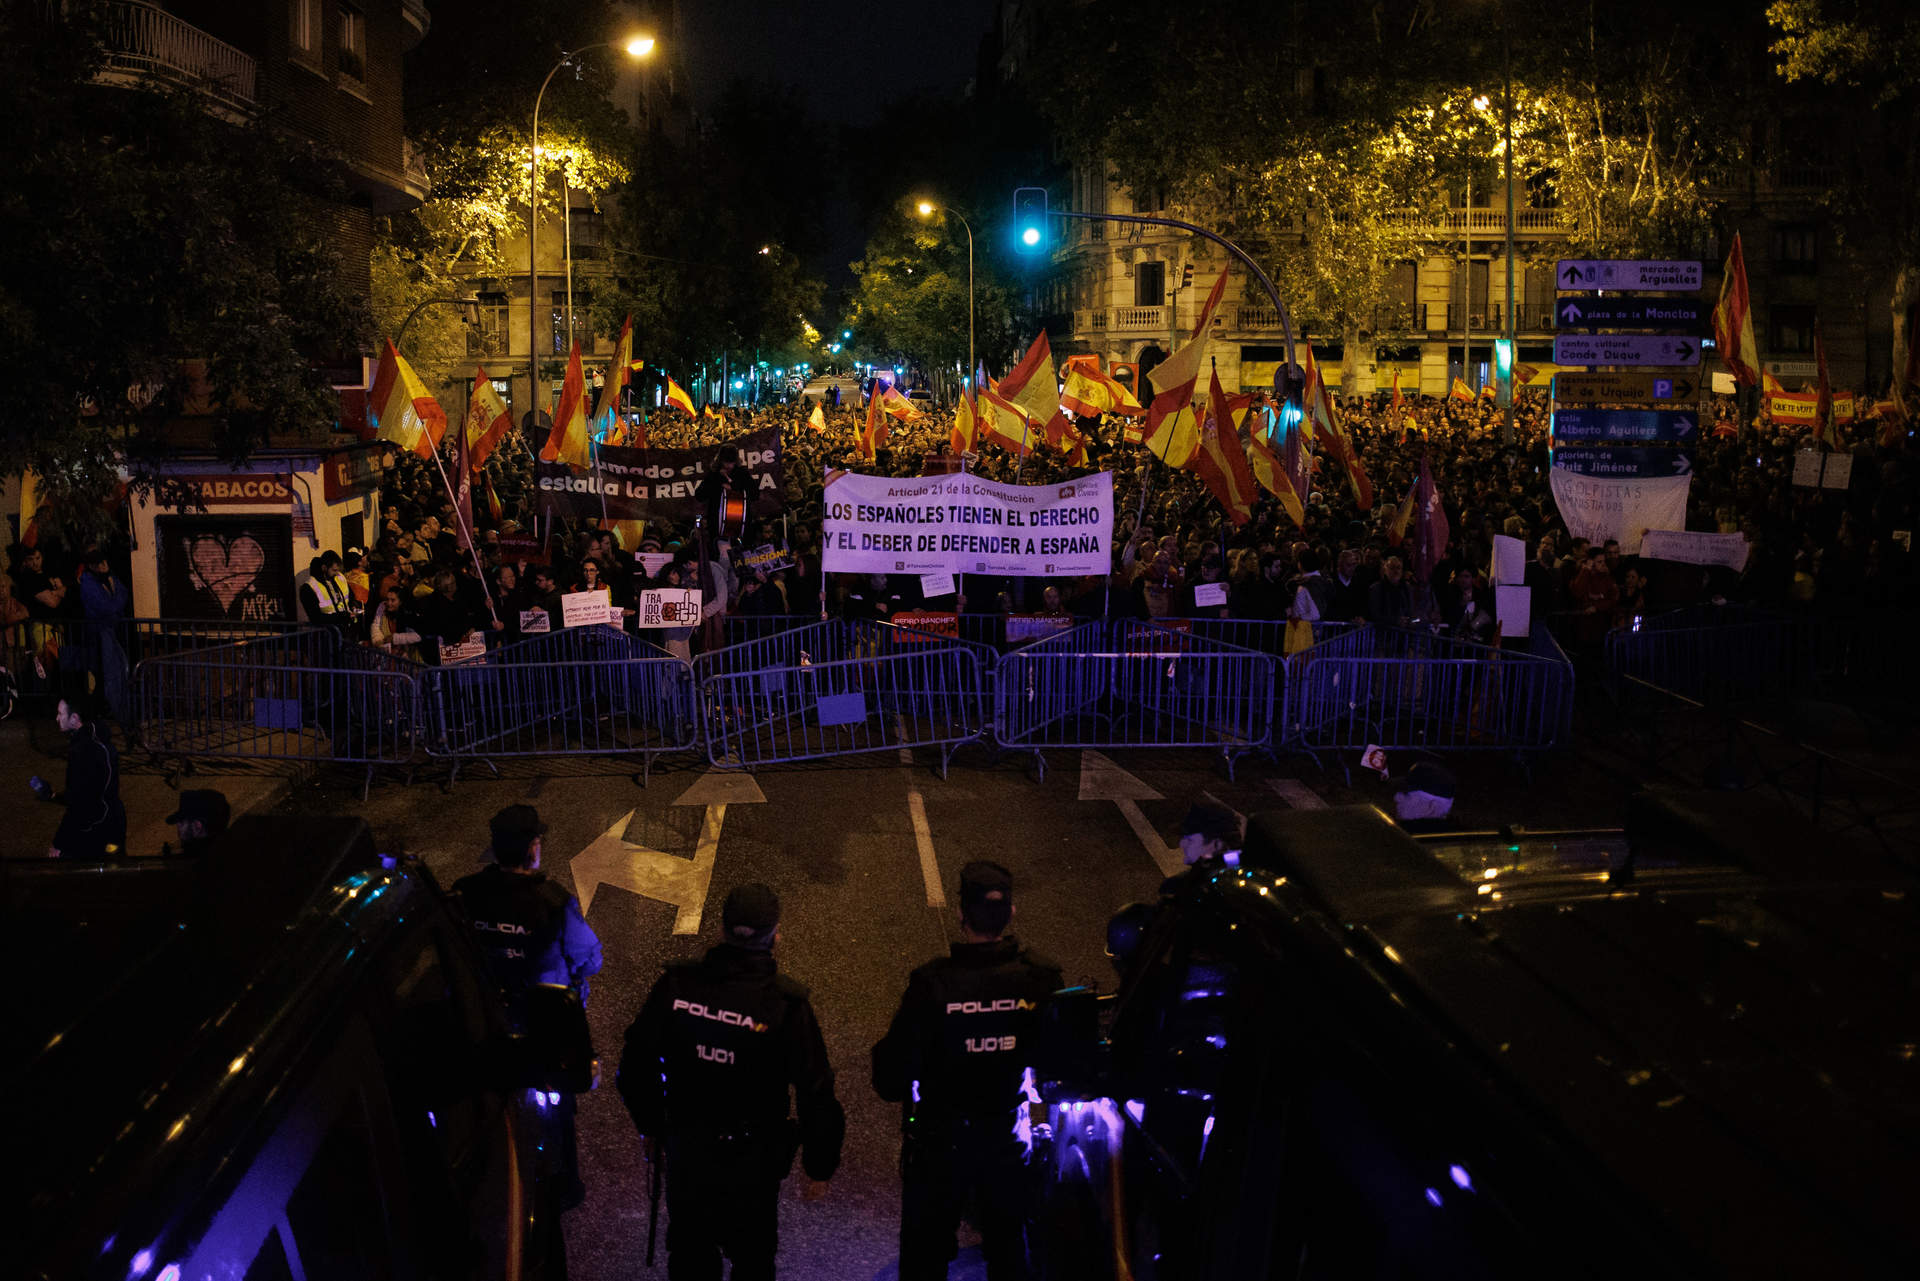 Cargar máis
Decenas de personas portan carteles y pancartas frente a la Policía, durante una protesta en la calle Ferraz.